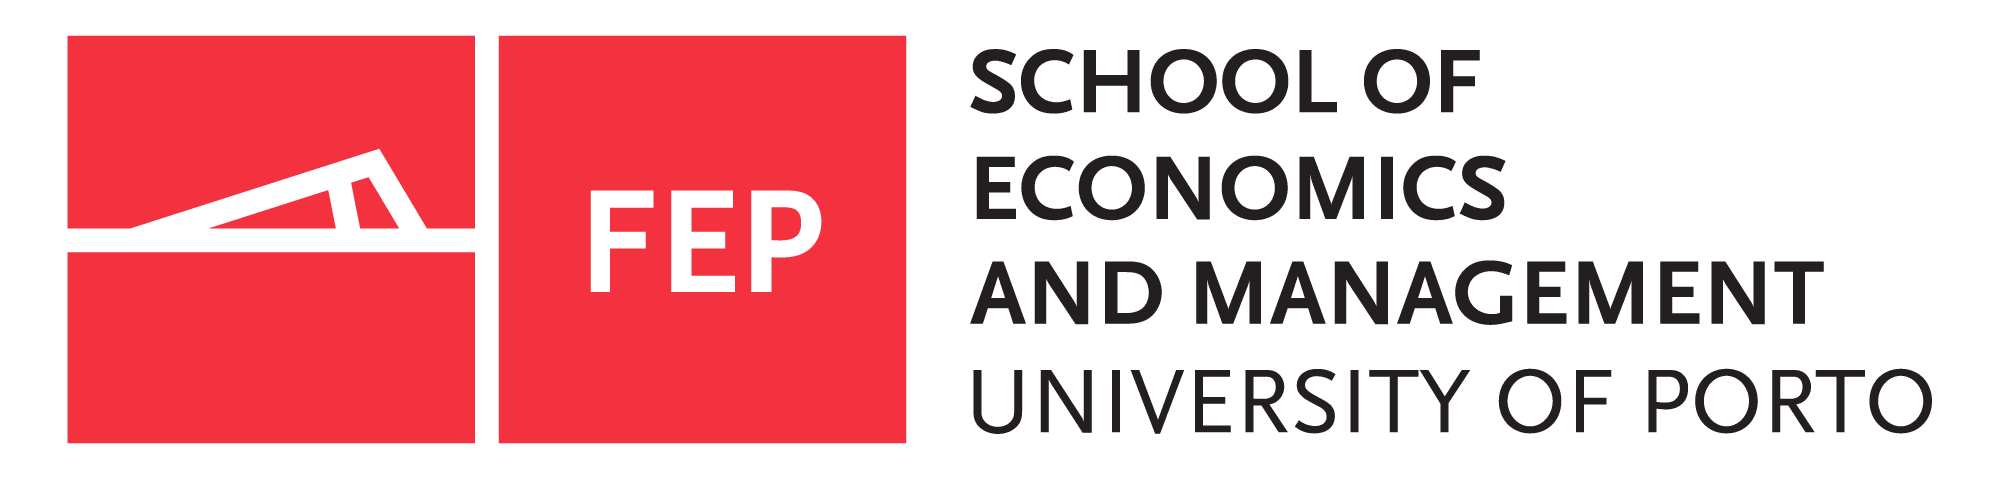 University of Porto School of Economics and Management